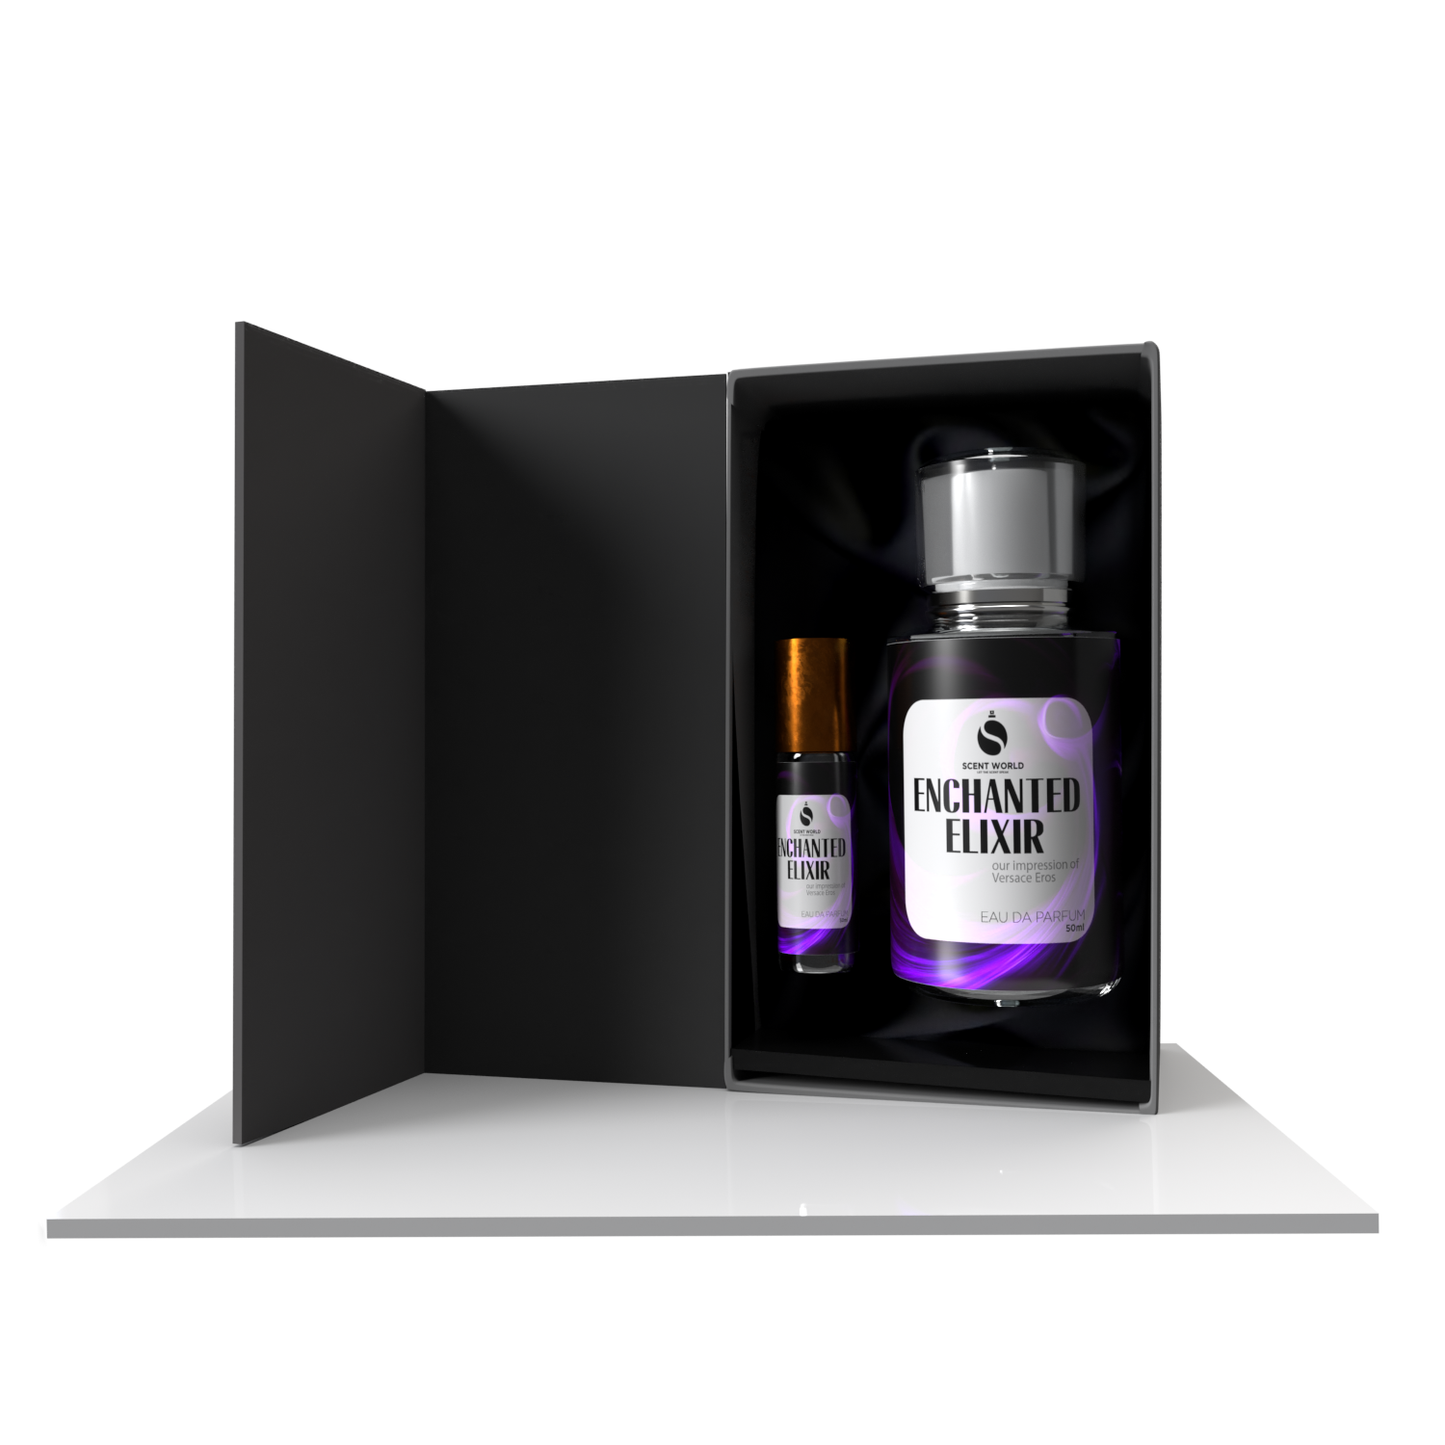 Enchanted Elixir Gift Box